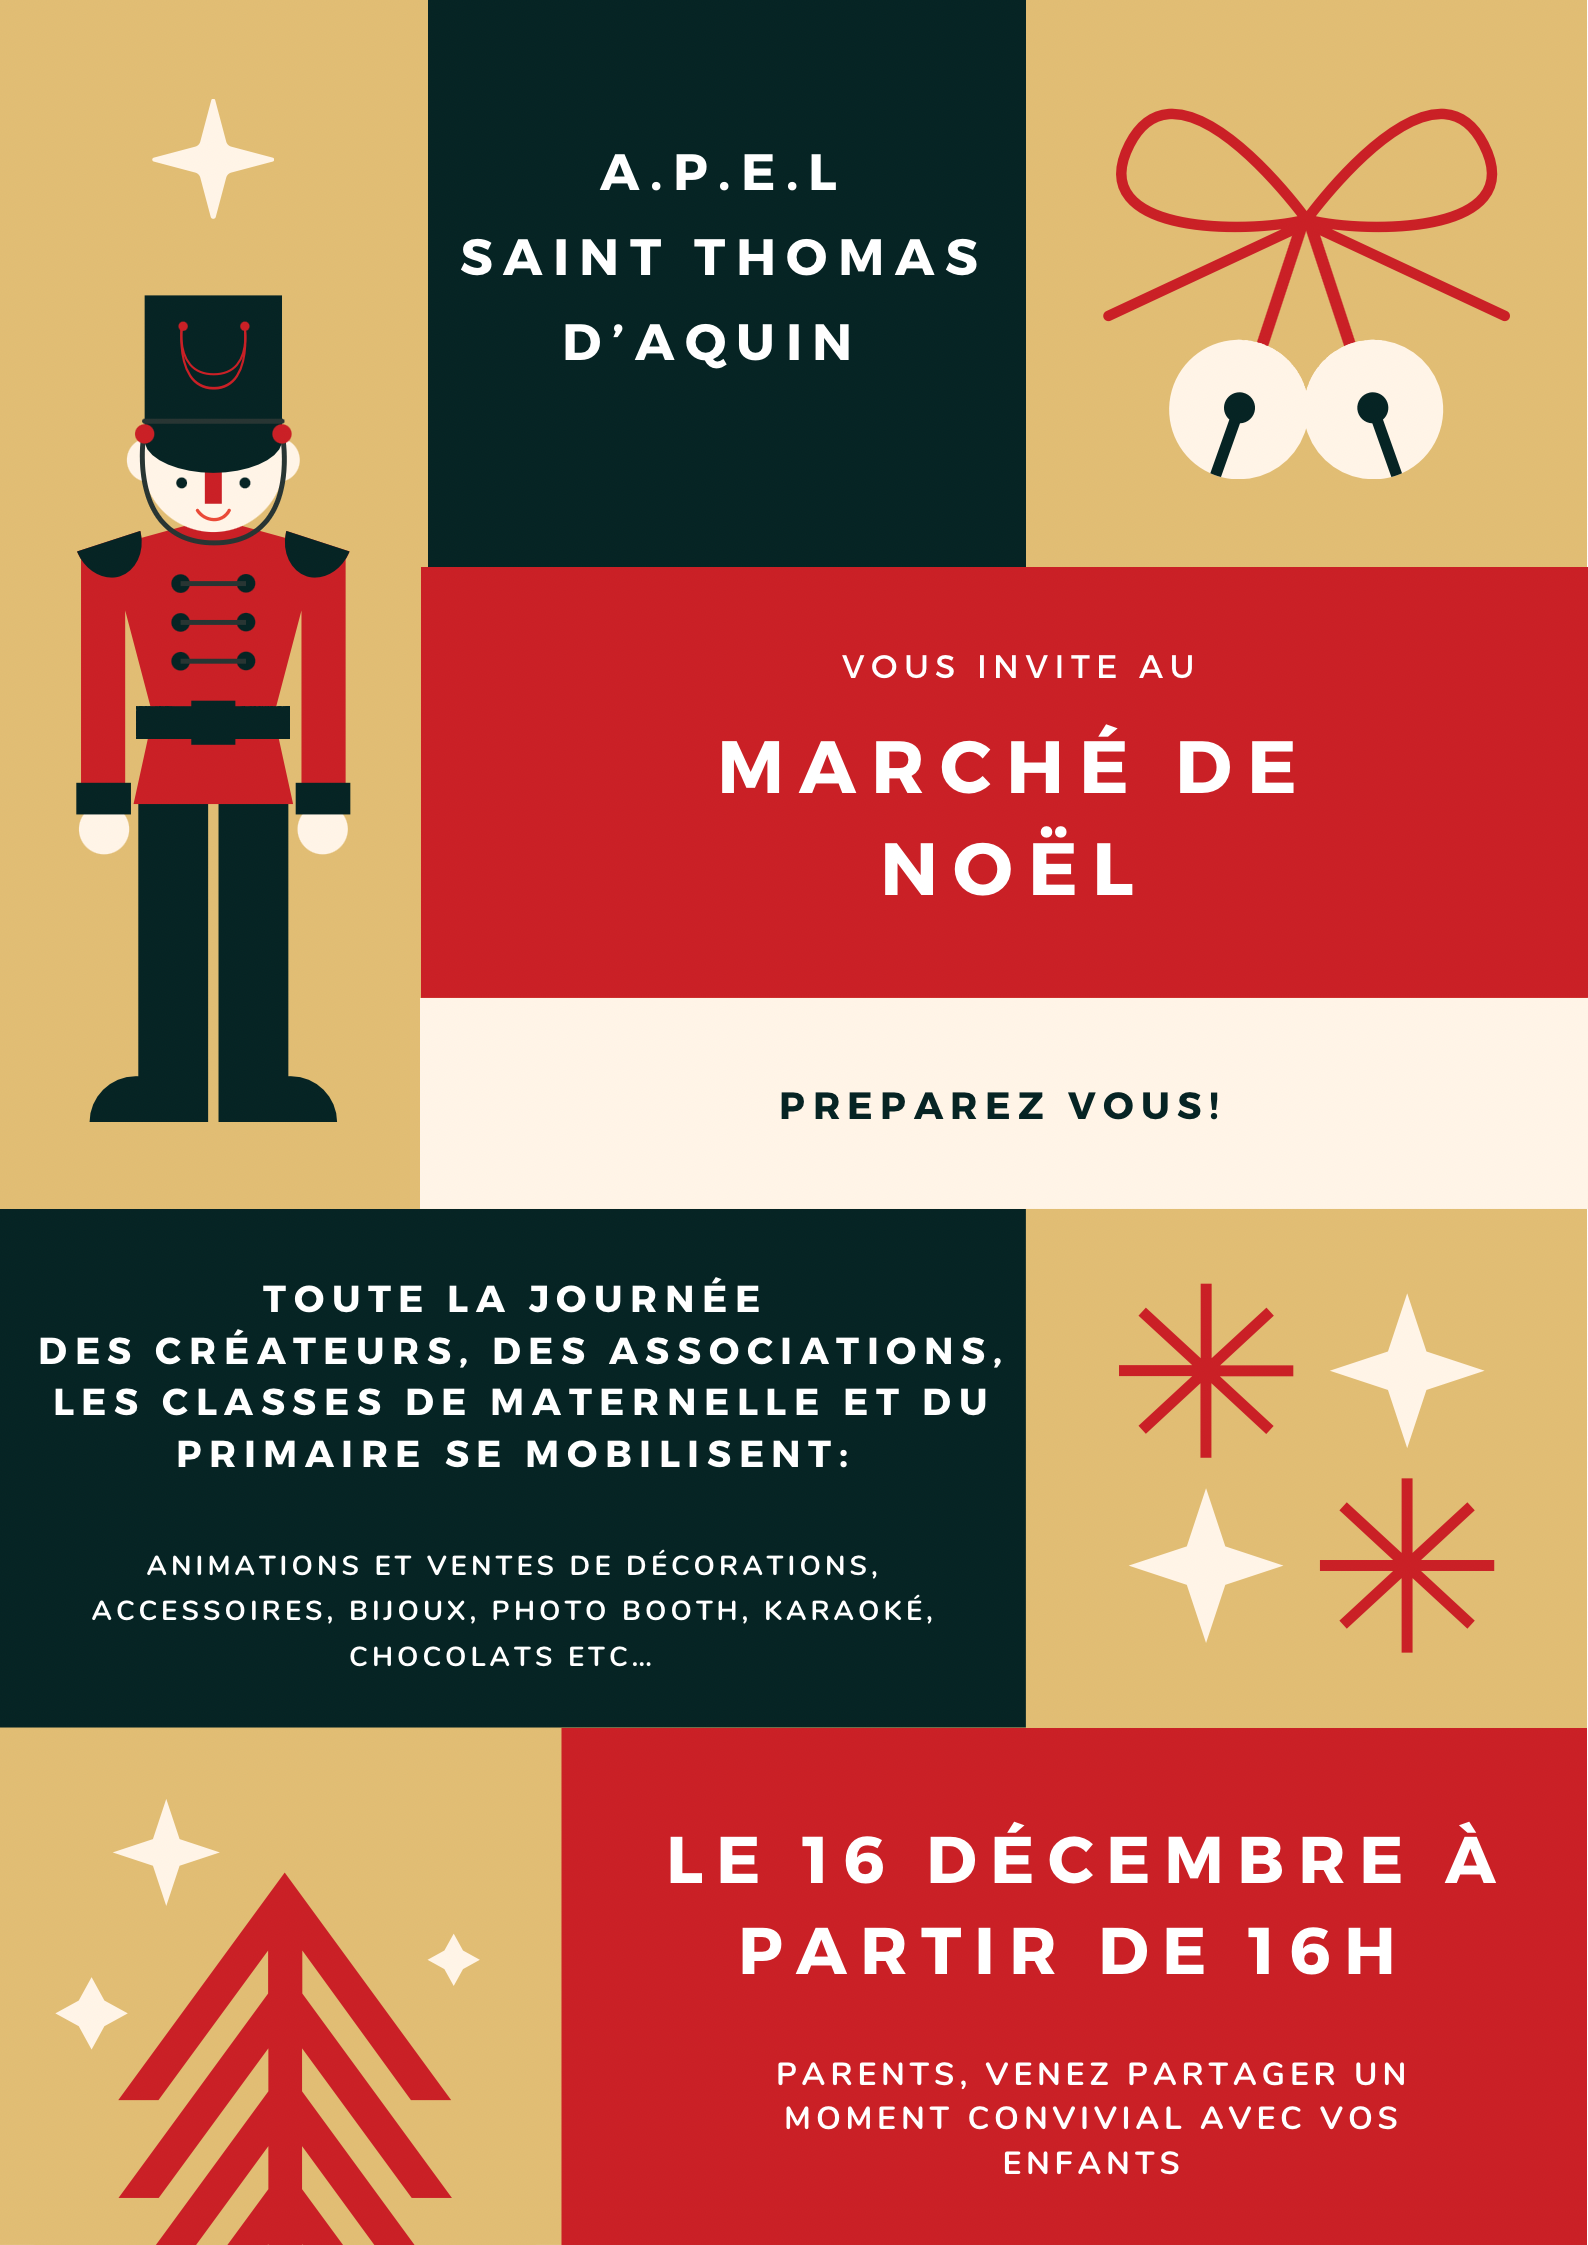 Marché de Noël made in STA